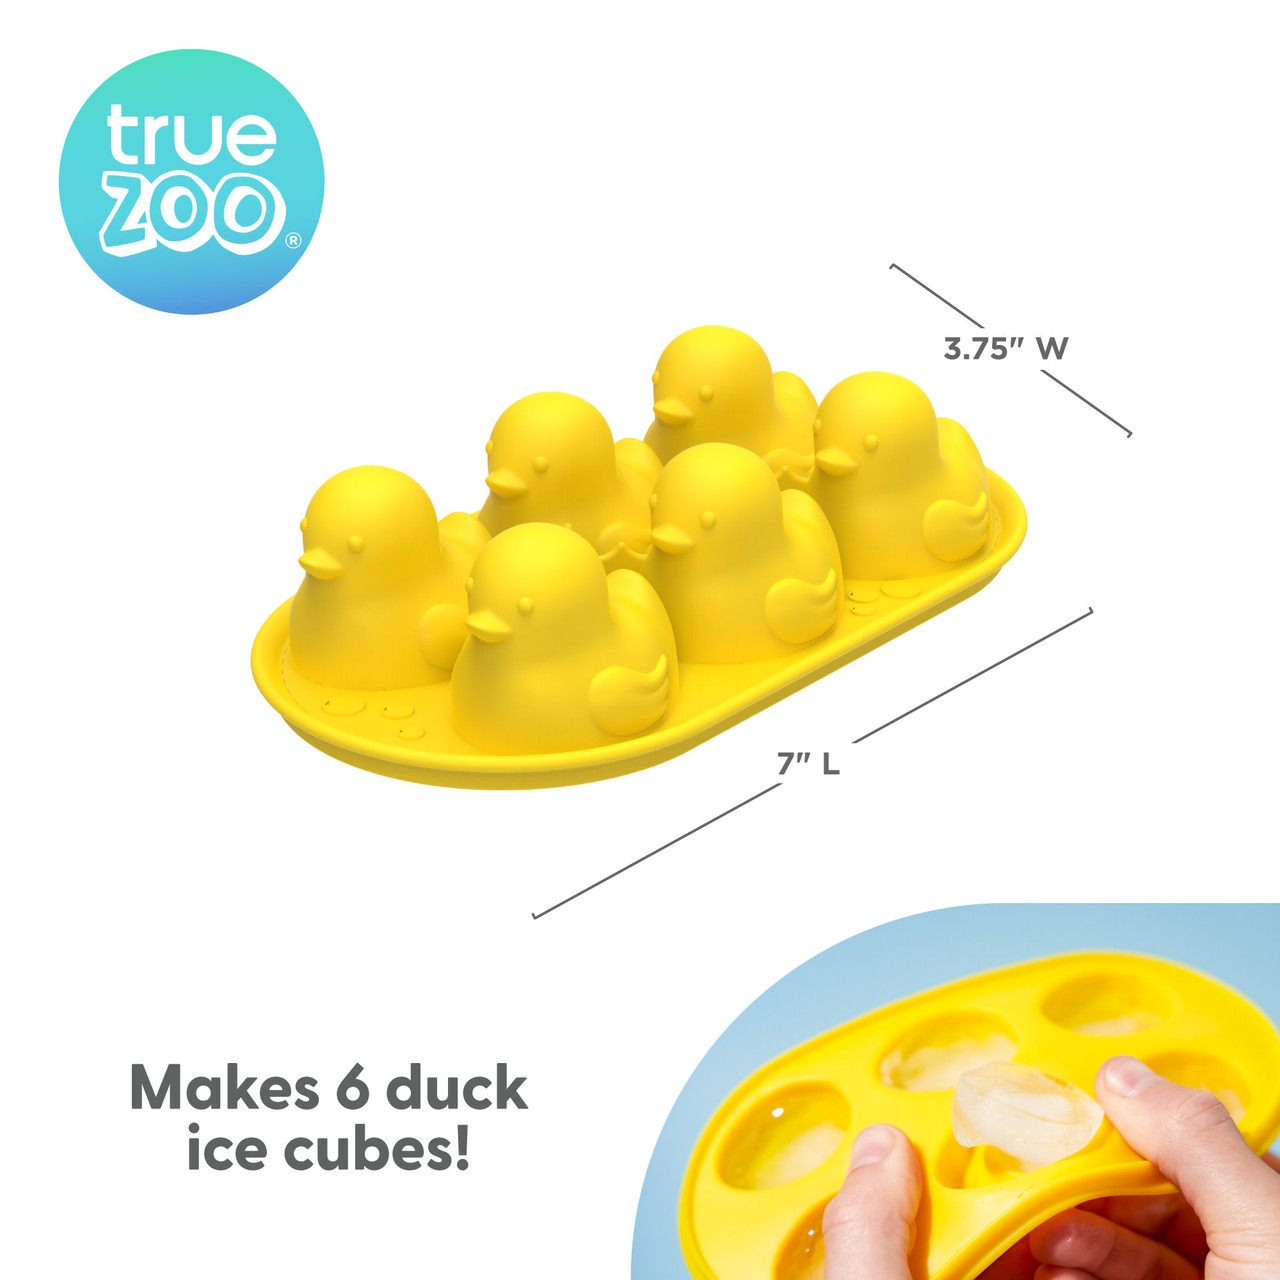 Quack the Ice Silicone Ice Cube Tray by TrueZoo